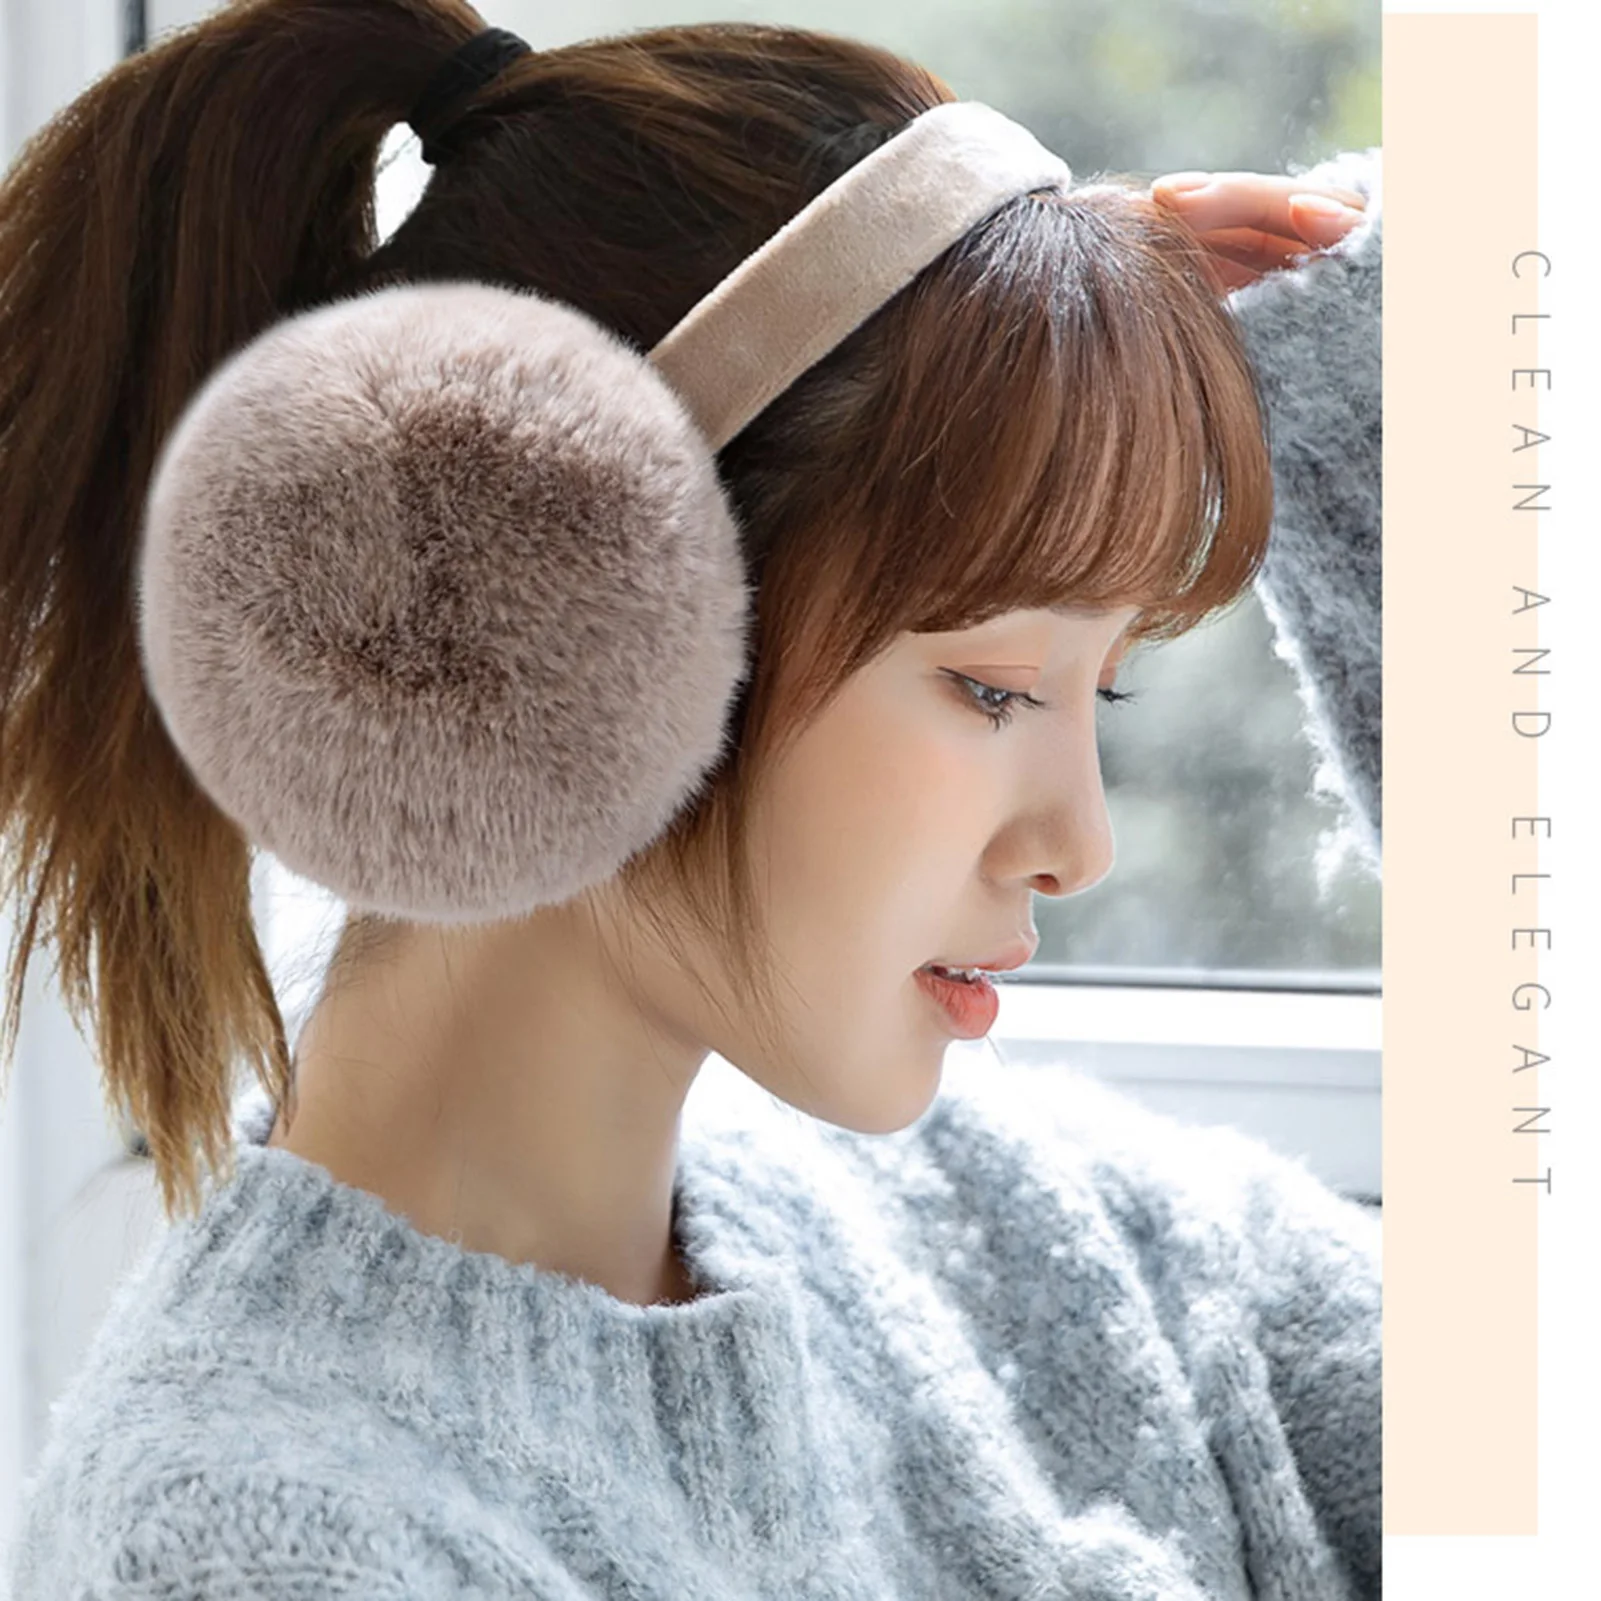 Fluffy Lightweight Ear Wamer com sacos de orelha removíveis para limpeza, adequado para 99% Head Circumference